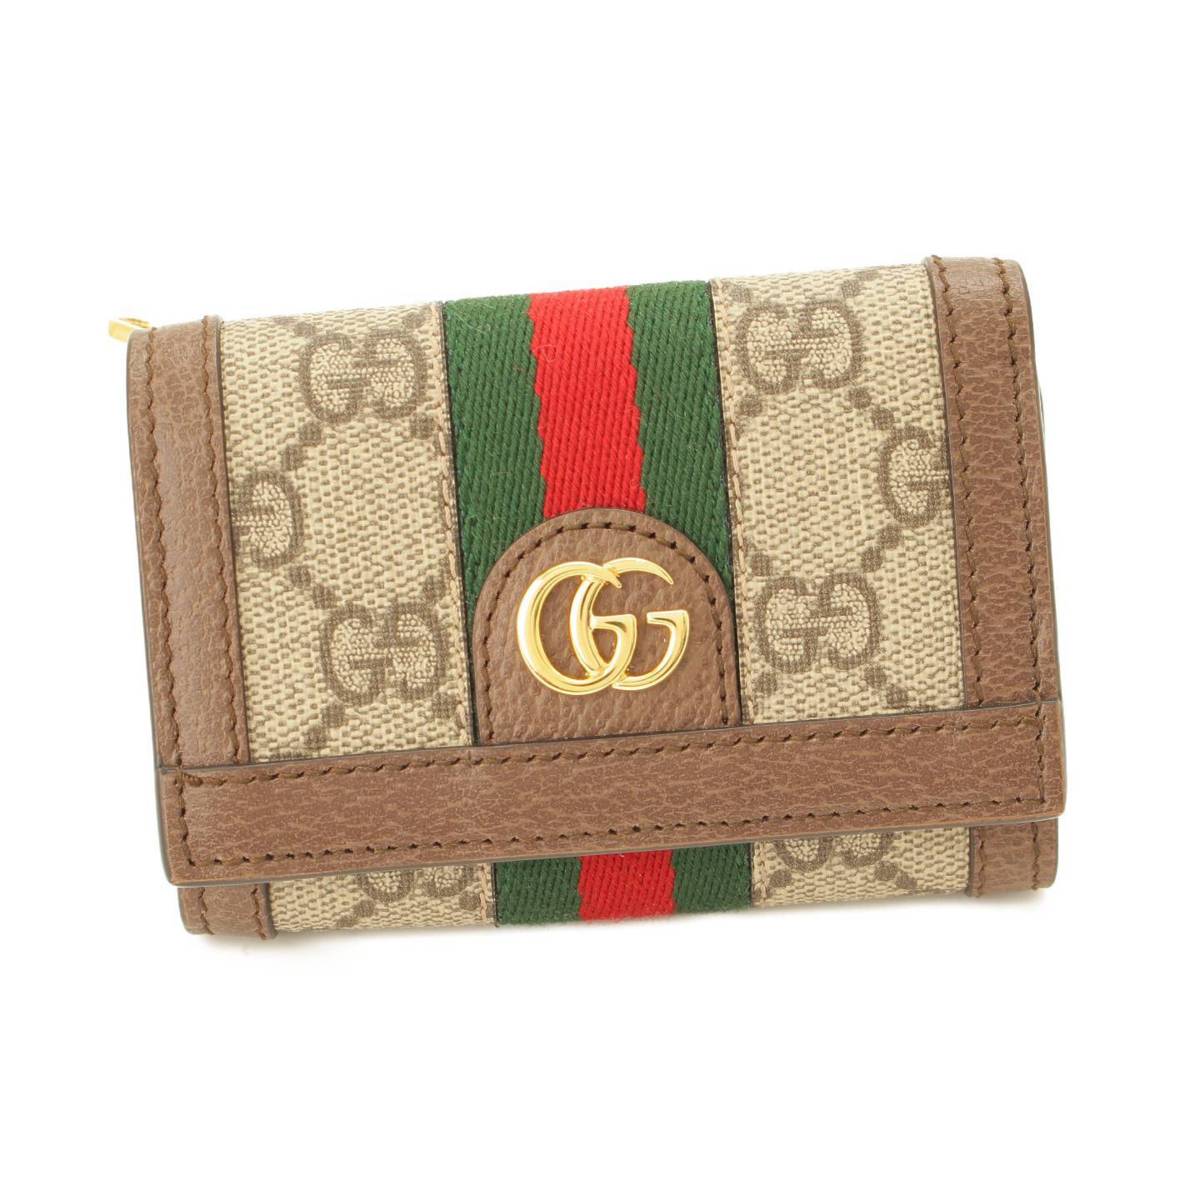 グッチ(Gucci) オフィディア GGスプリーム コンパクト 三つ折り財布 644334 ブラウン